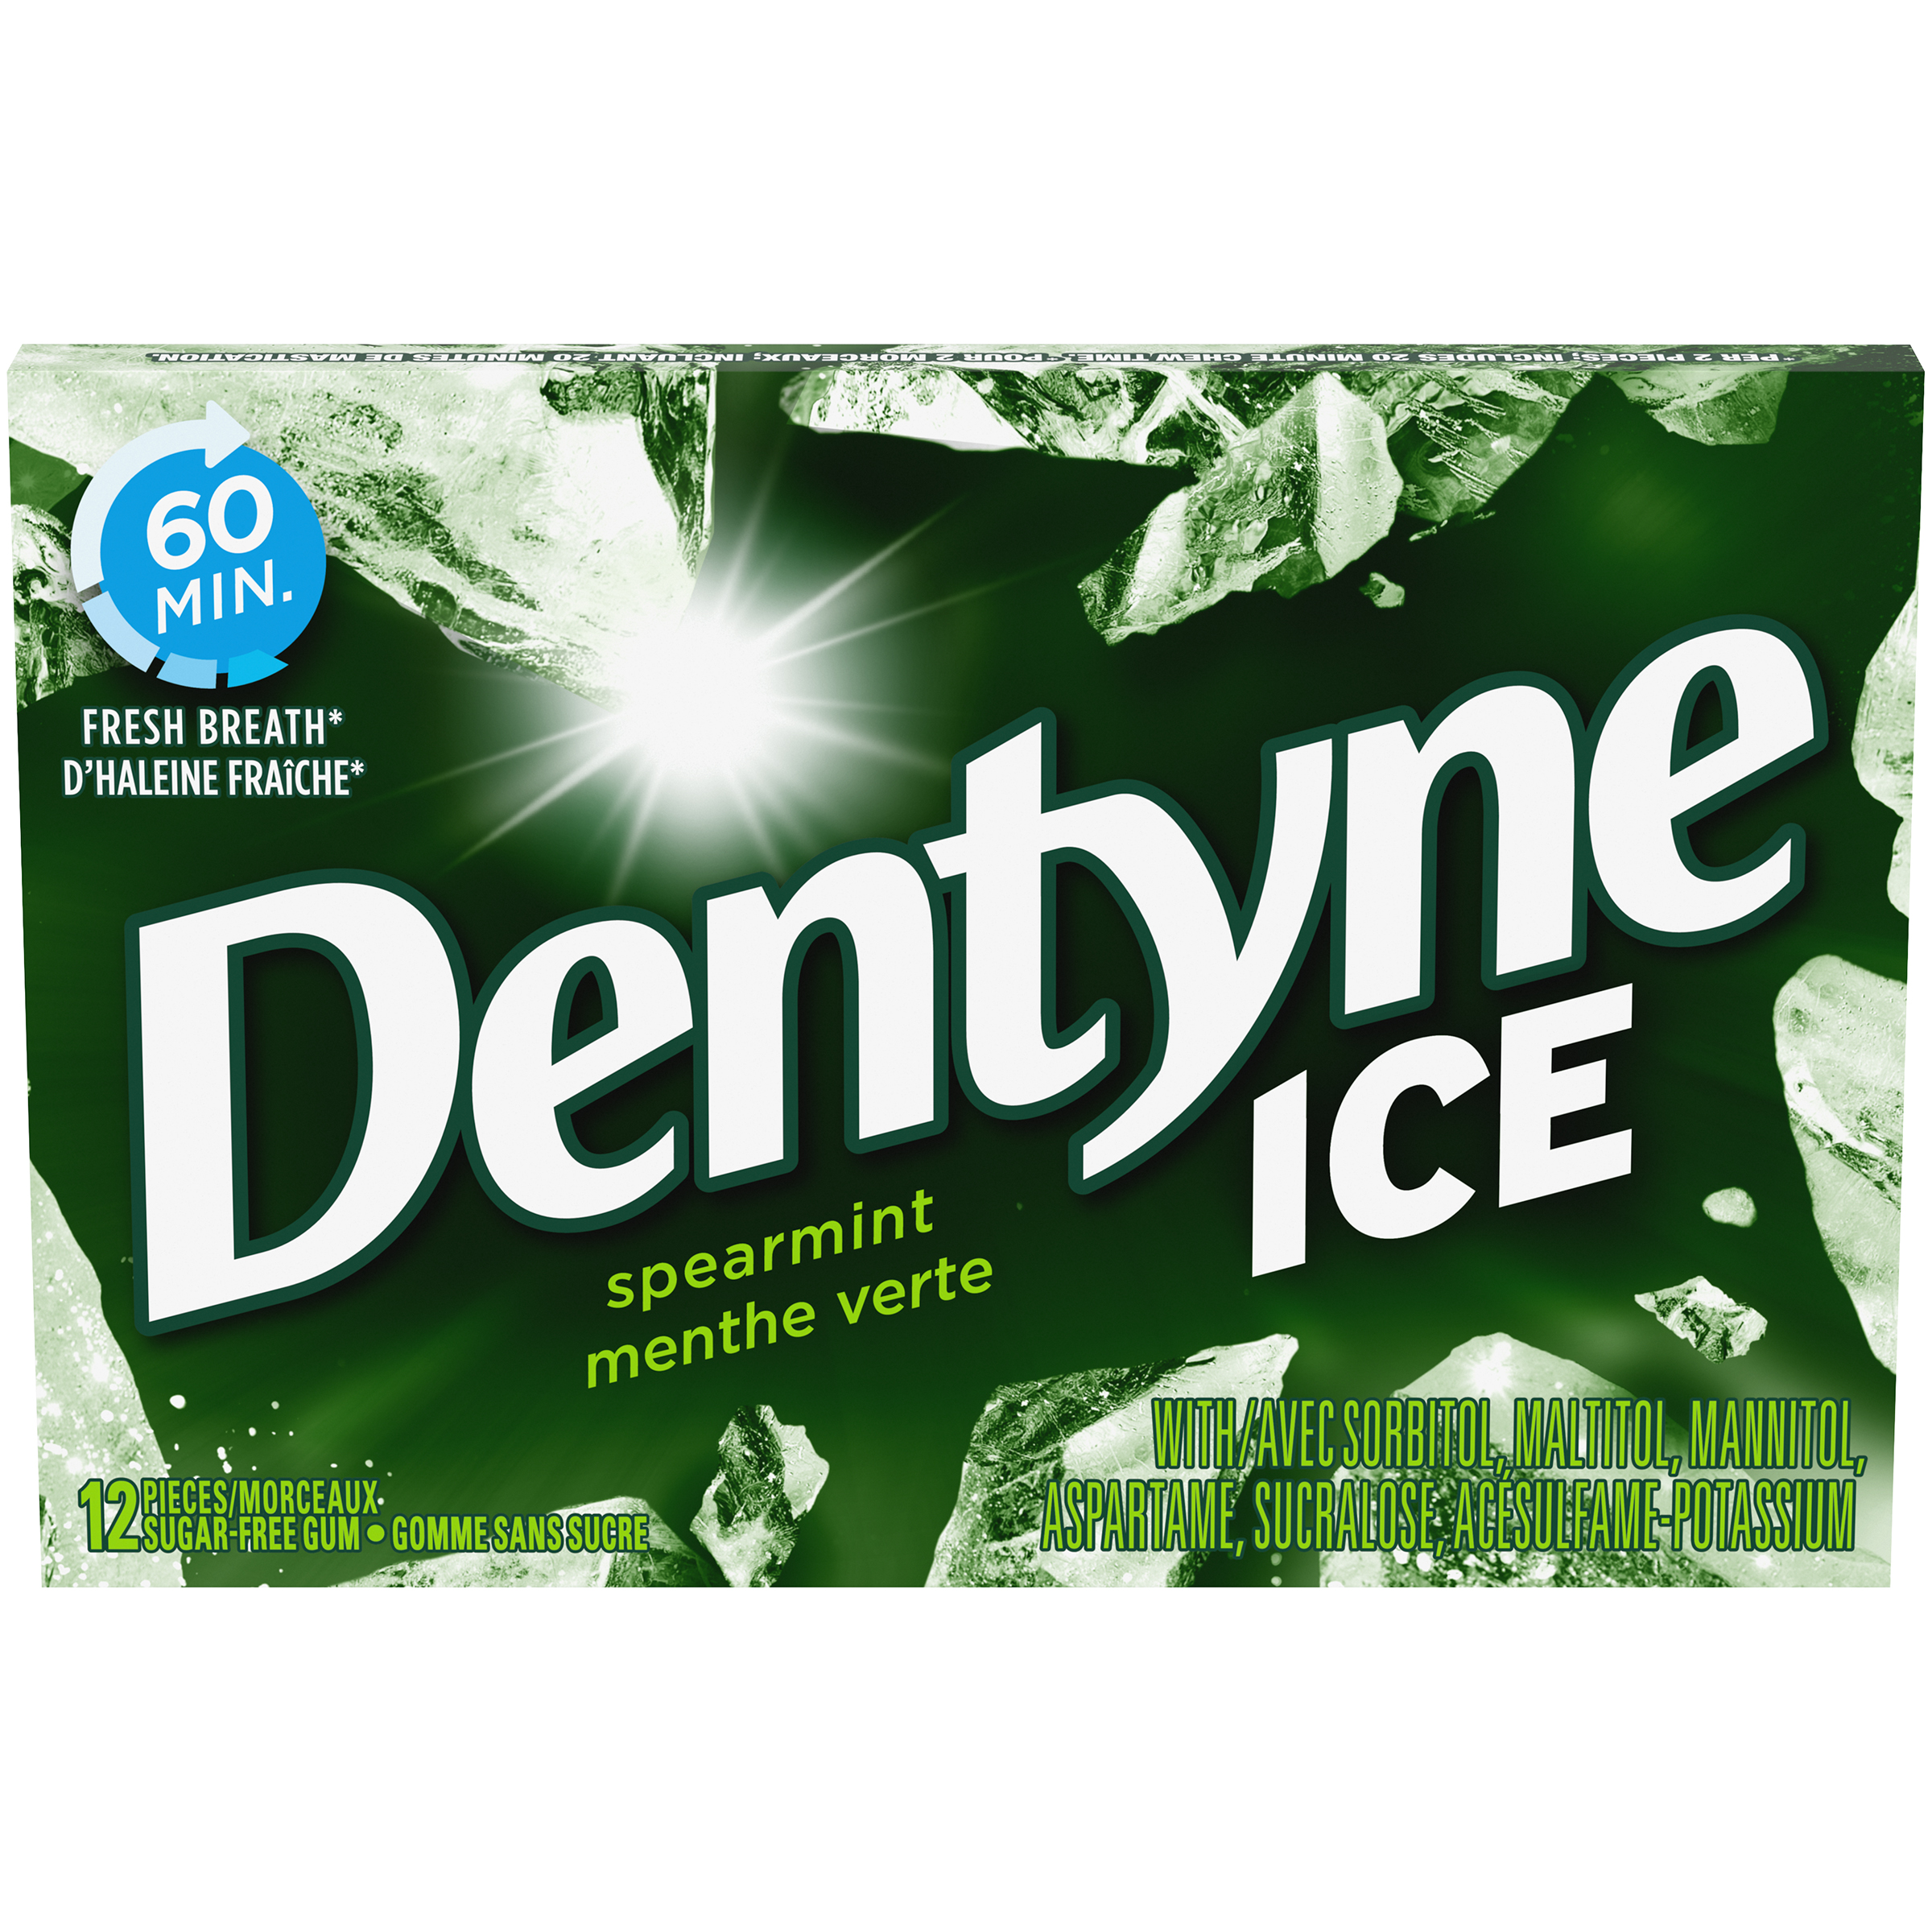 DENTYNE ICE MENTHE VERTE 12MCX